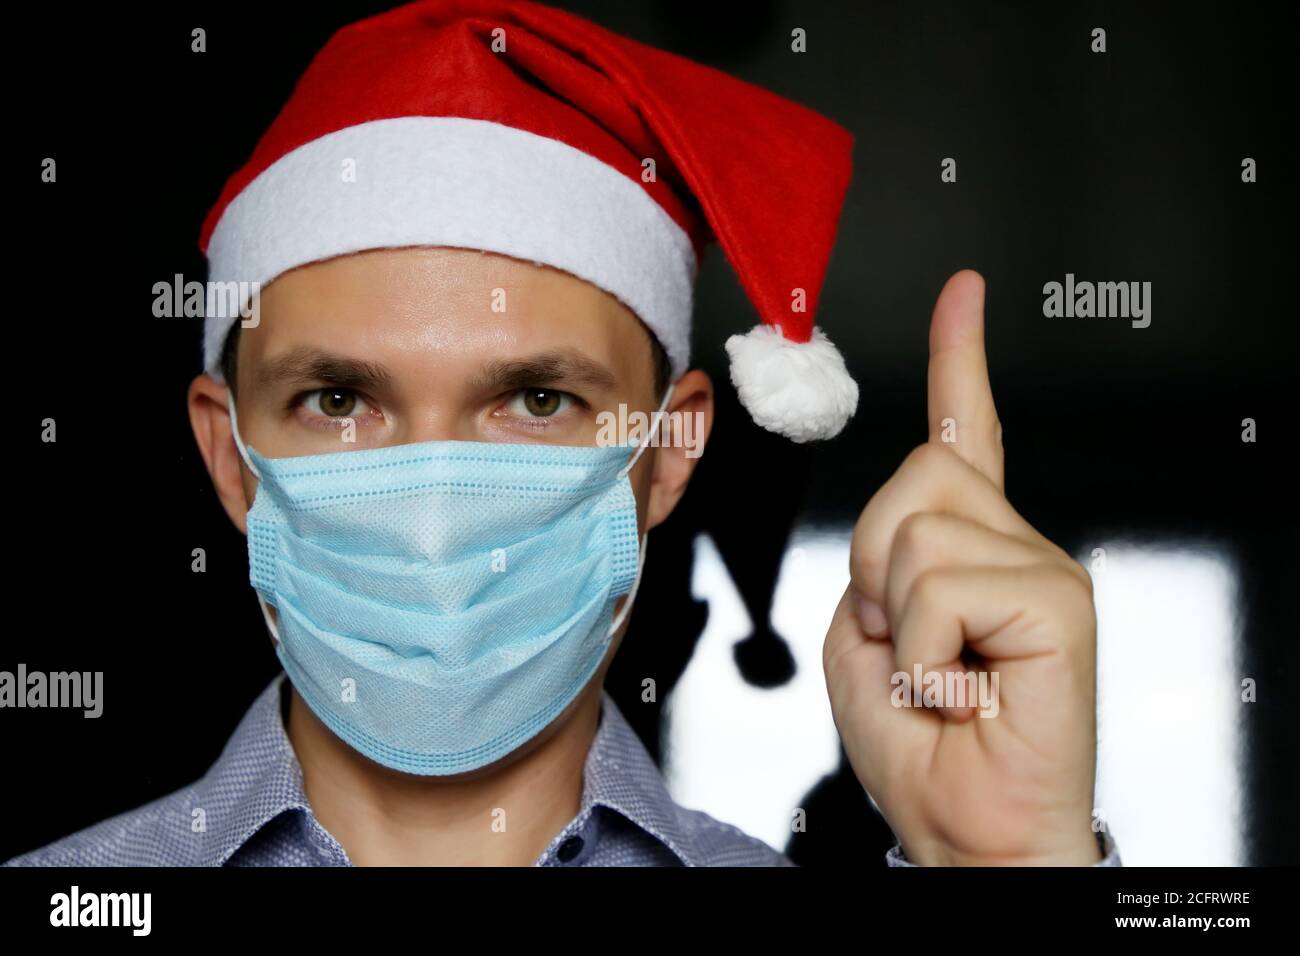 Porträt des Mannes in medizinischen Gesichtsmaske und Weihnachtsmann Hut. Weihnachtsfeier während der Coronavirus-Pandemie Stockfoto